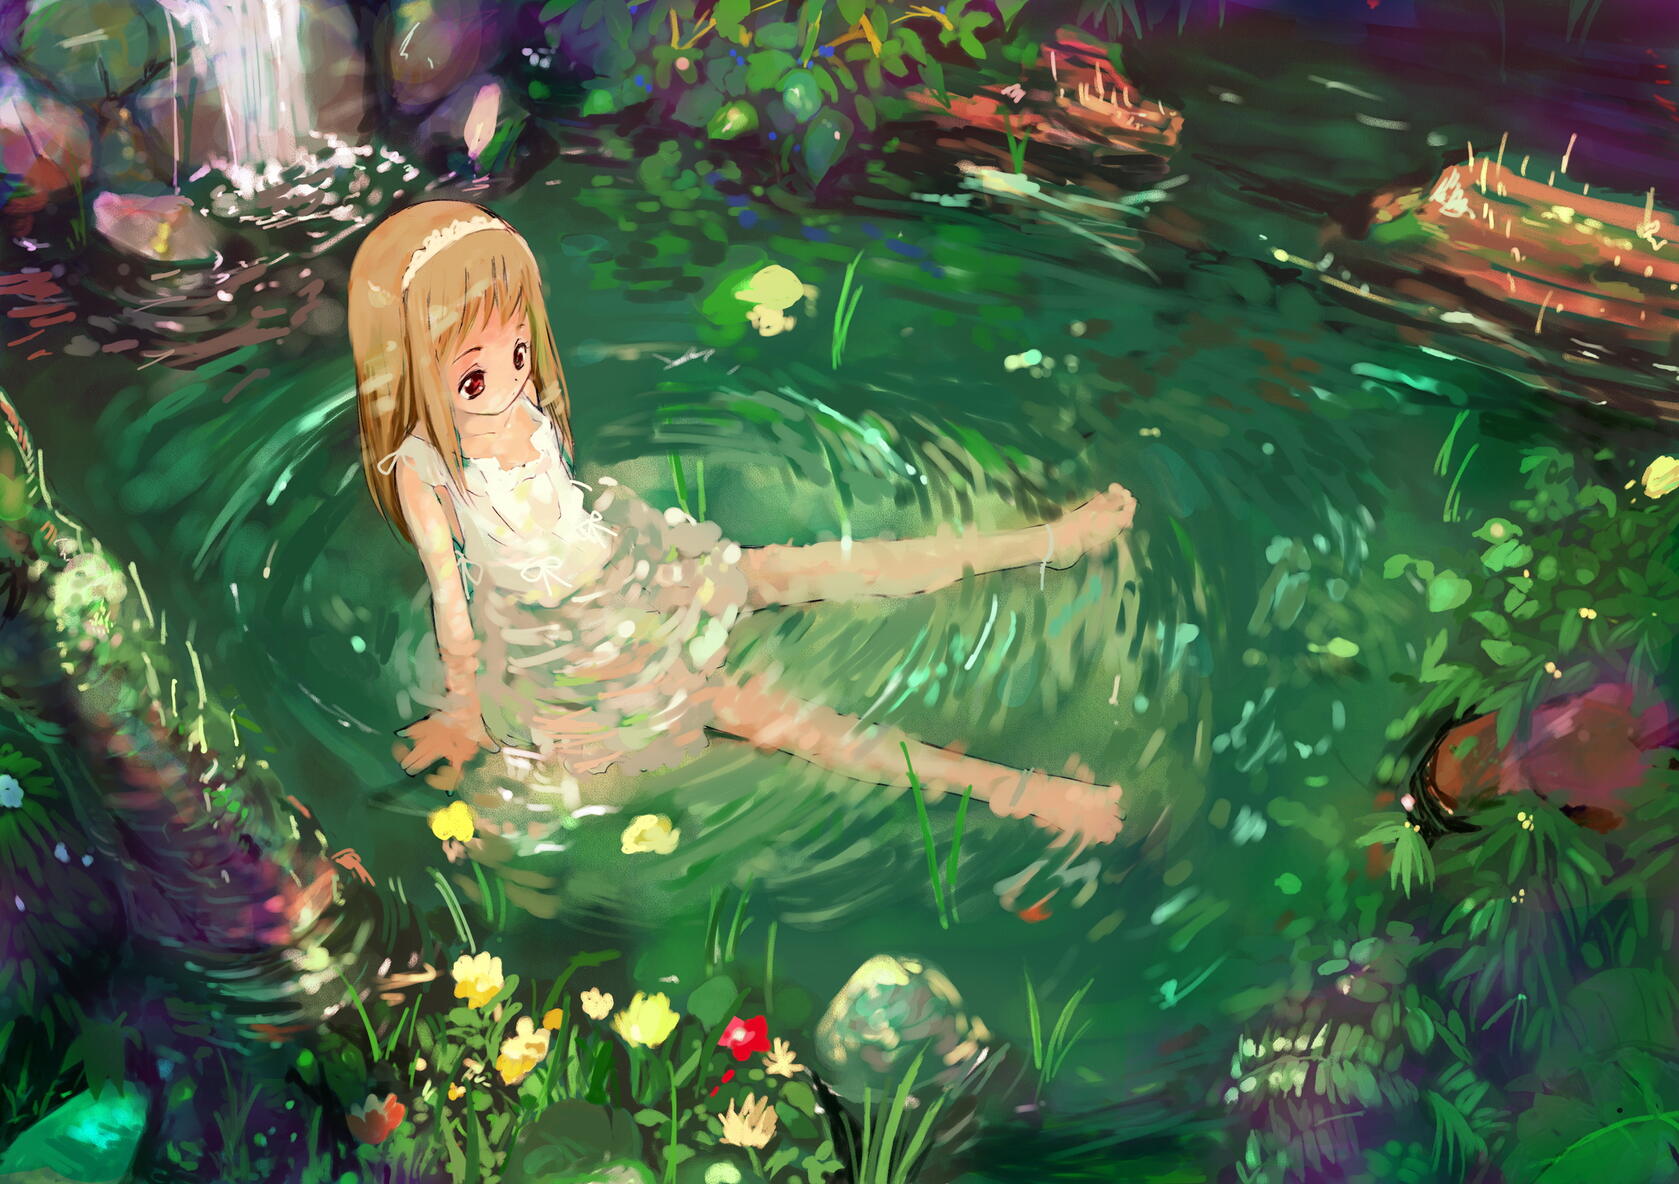 坐在河里水里的可爱白裙动漫小女孩和周围清新野草鲜花桌面壁纸